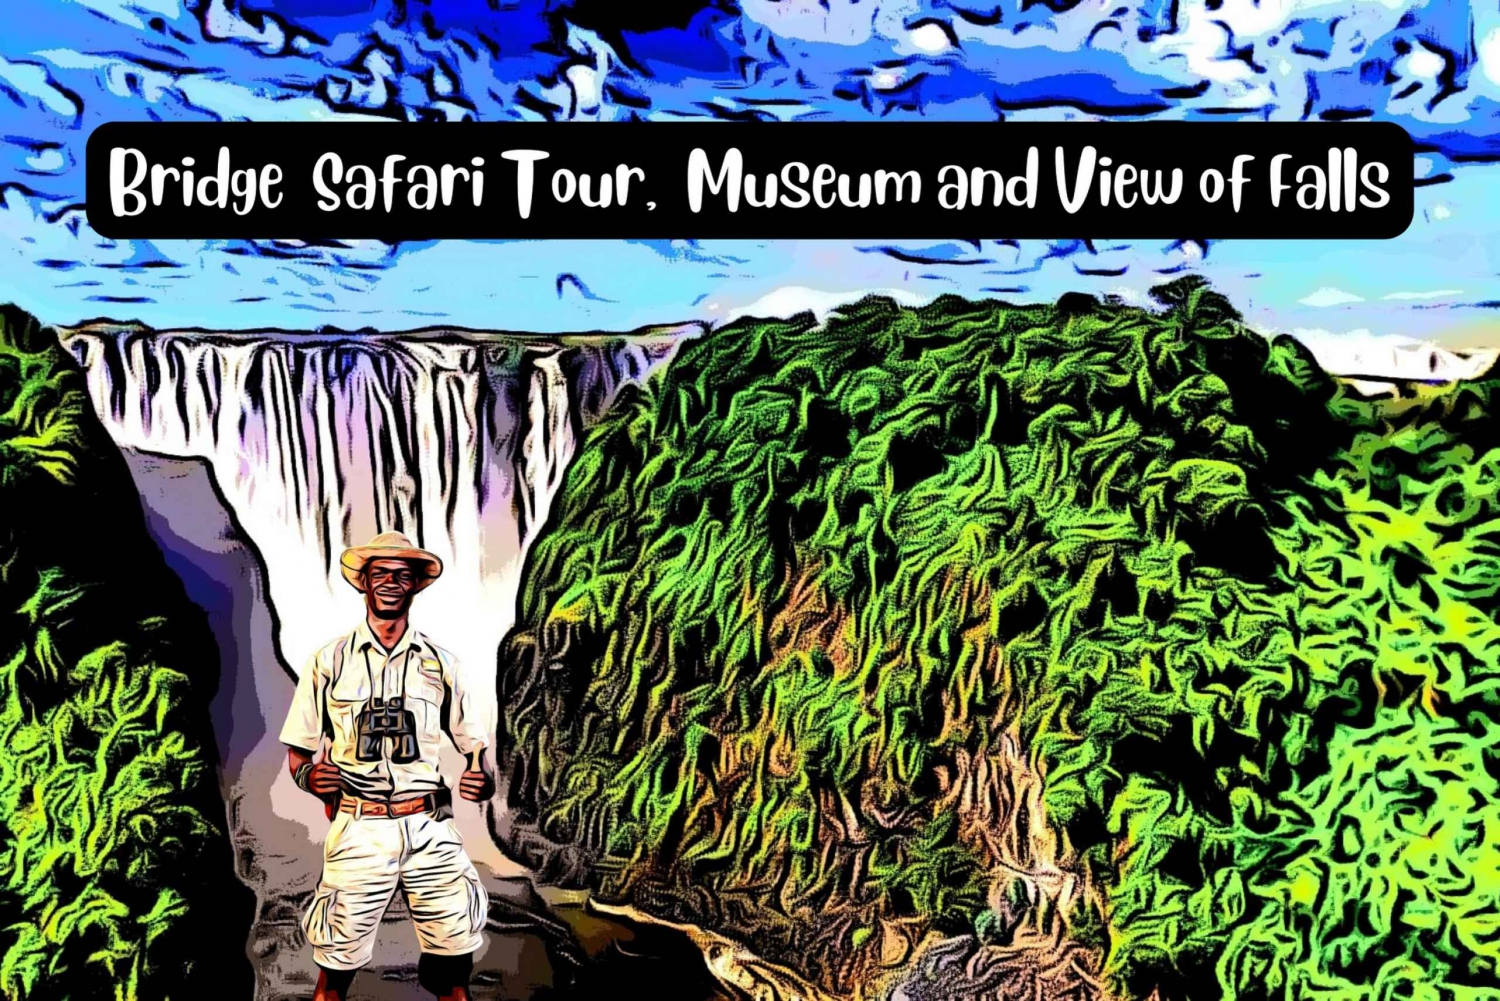 Victoria watervallen: Begeleide brugsafari met museum + watervallen